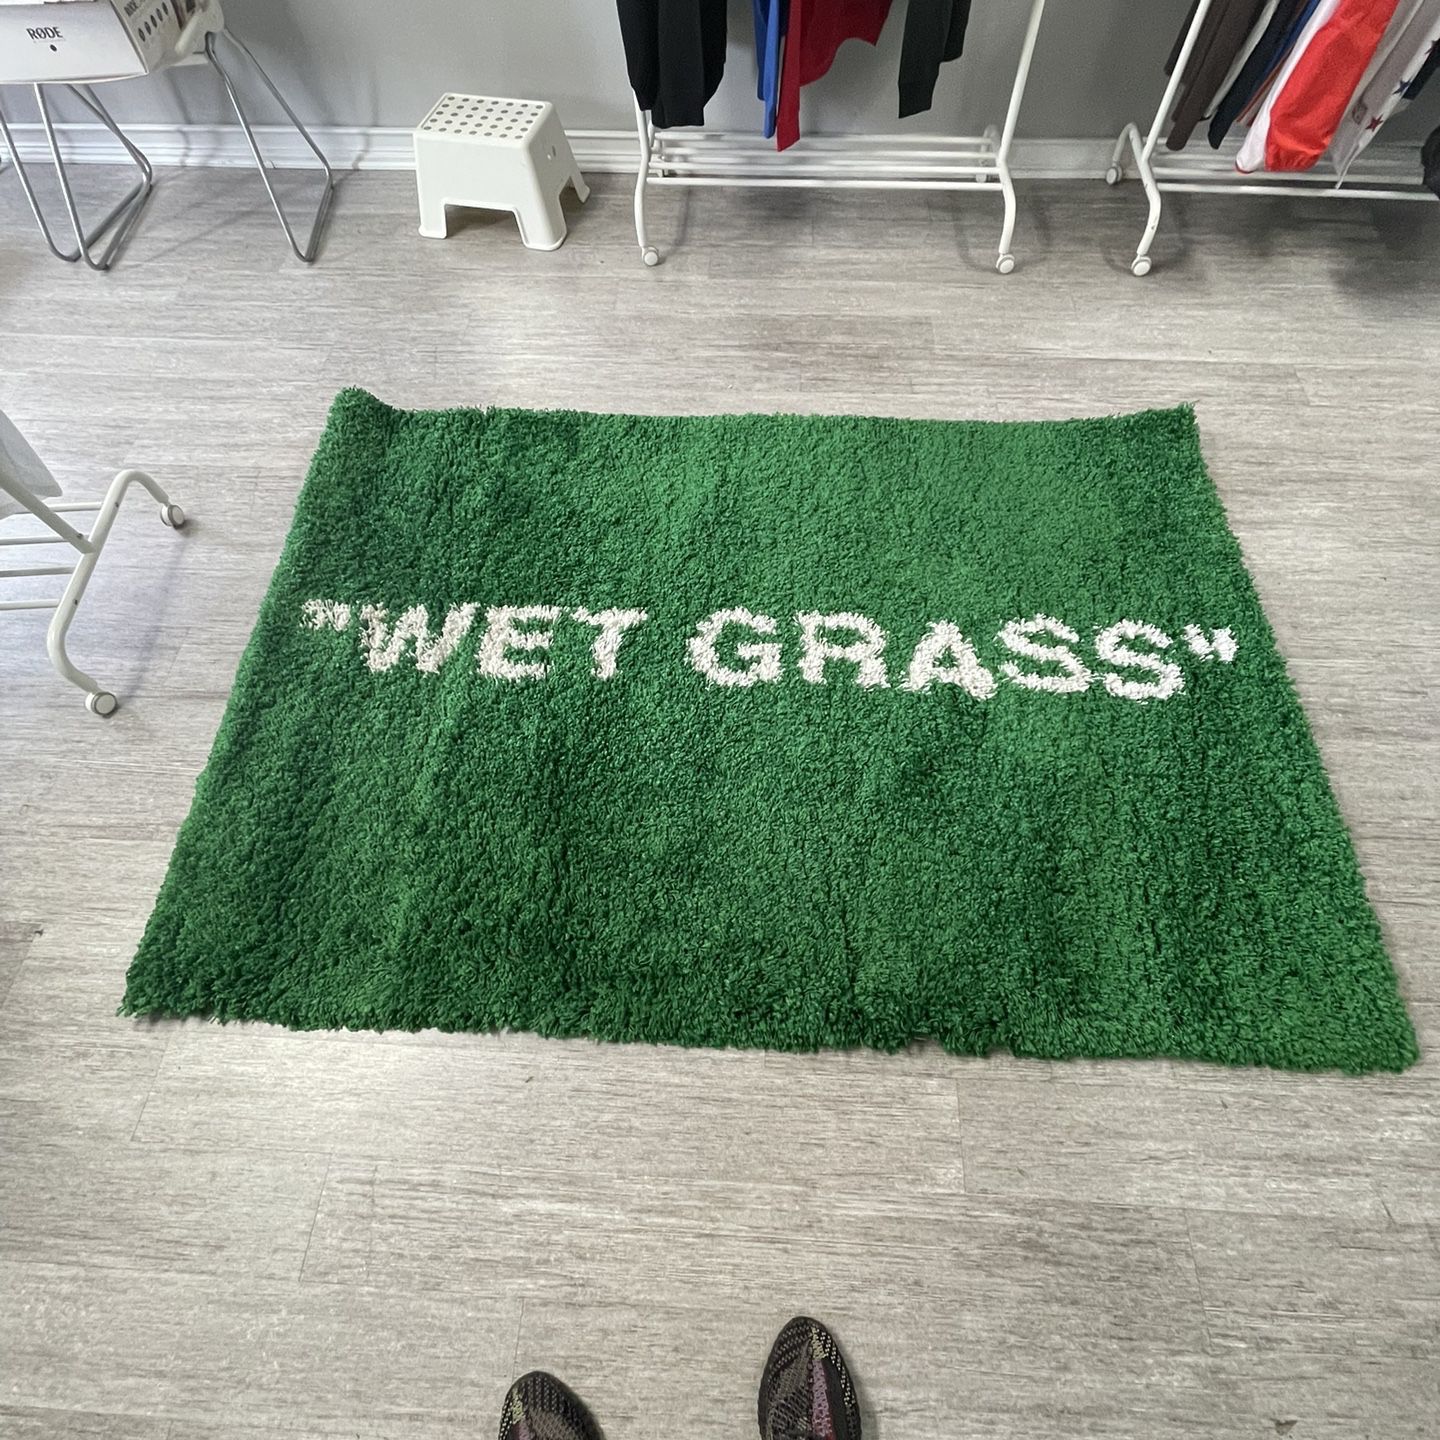 Wet Grass Rug